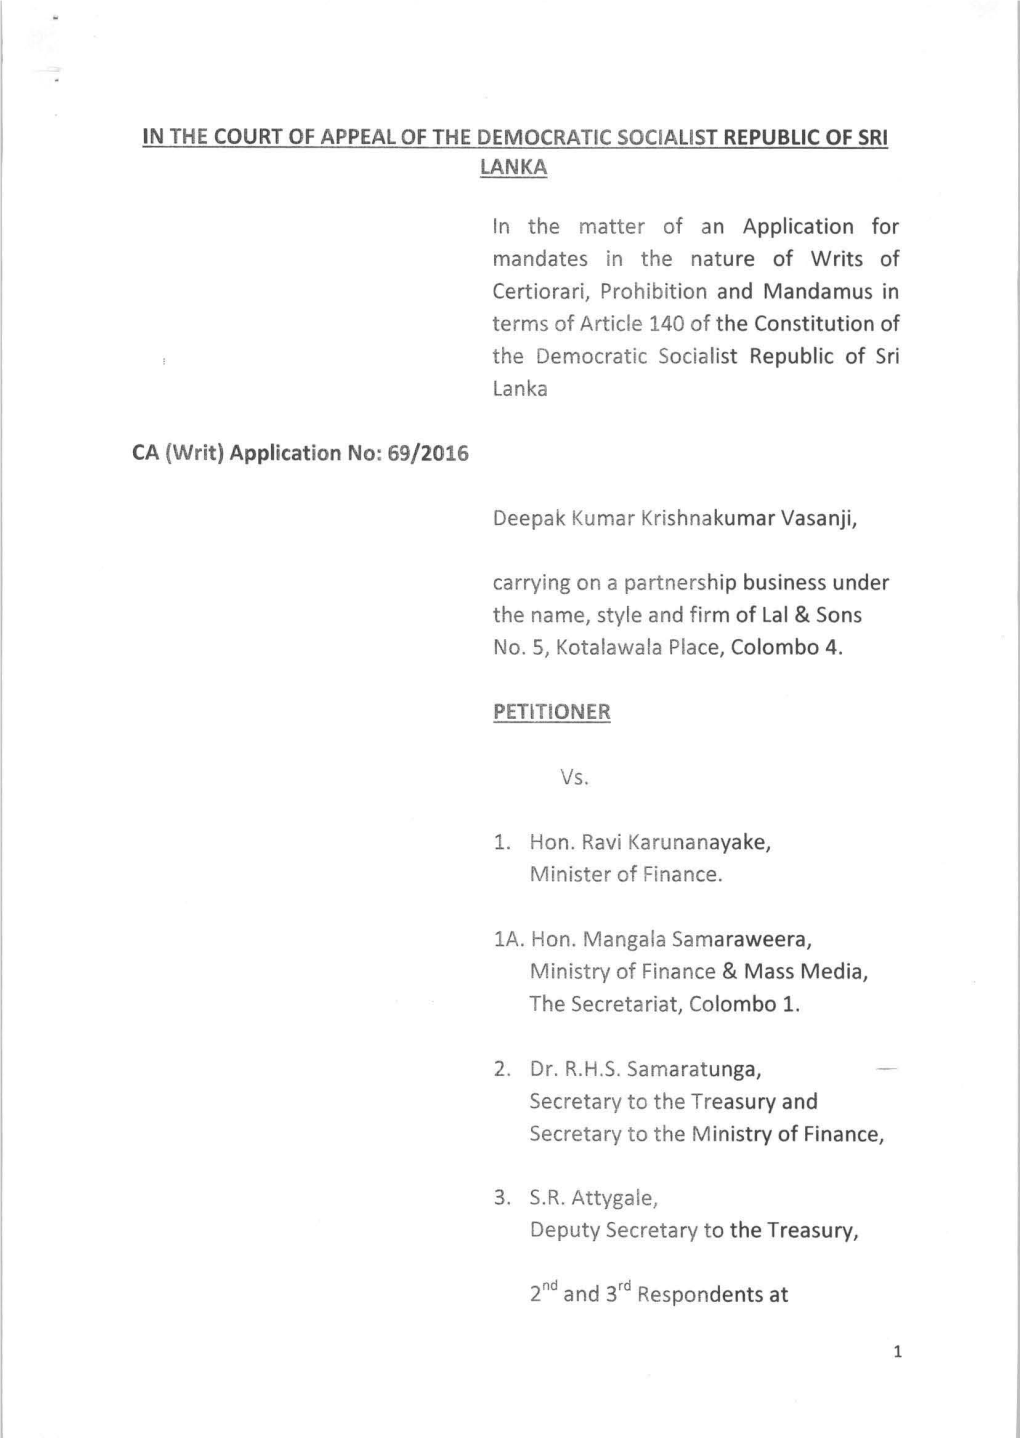 C.A WRIT 69/2016 Deepak Kumar Krishnakumar Vasanji Vs Hon. Ravi Karunanayake, Minister of Finance